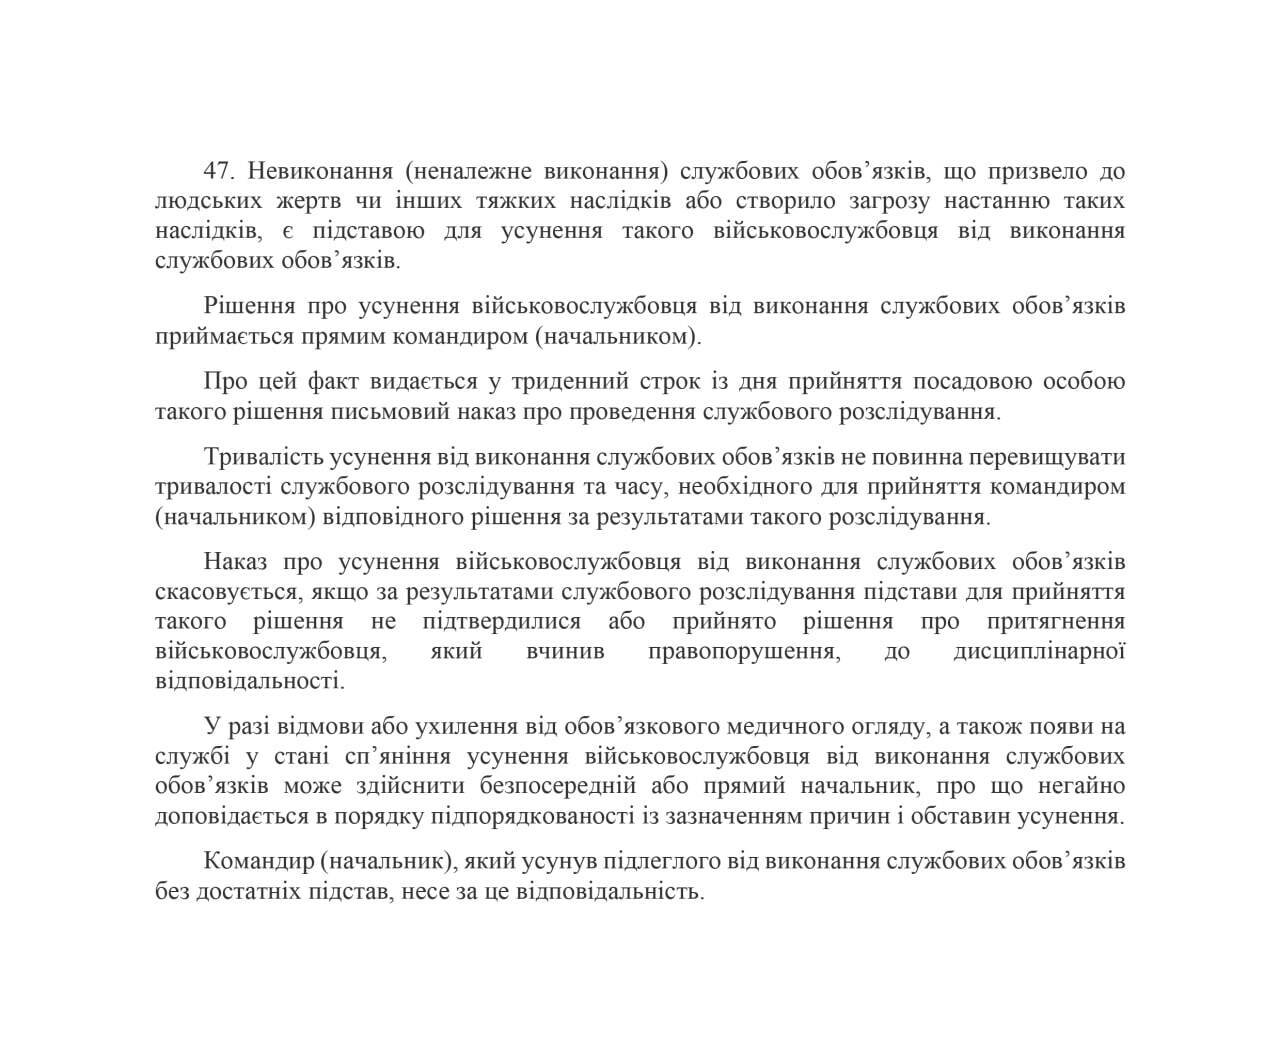 Статья 47 Дисциплинарного устава Вооруженных сил Украины.